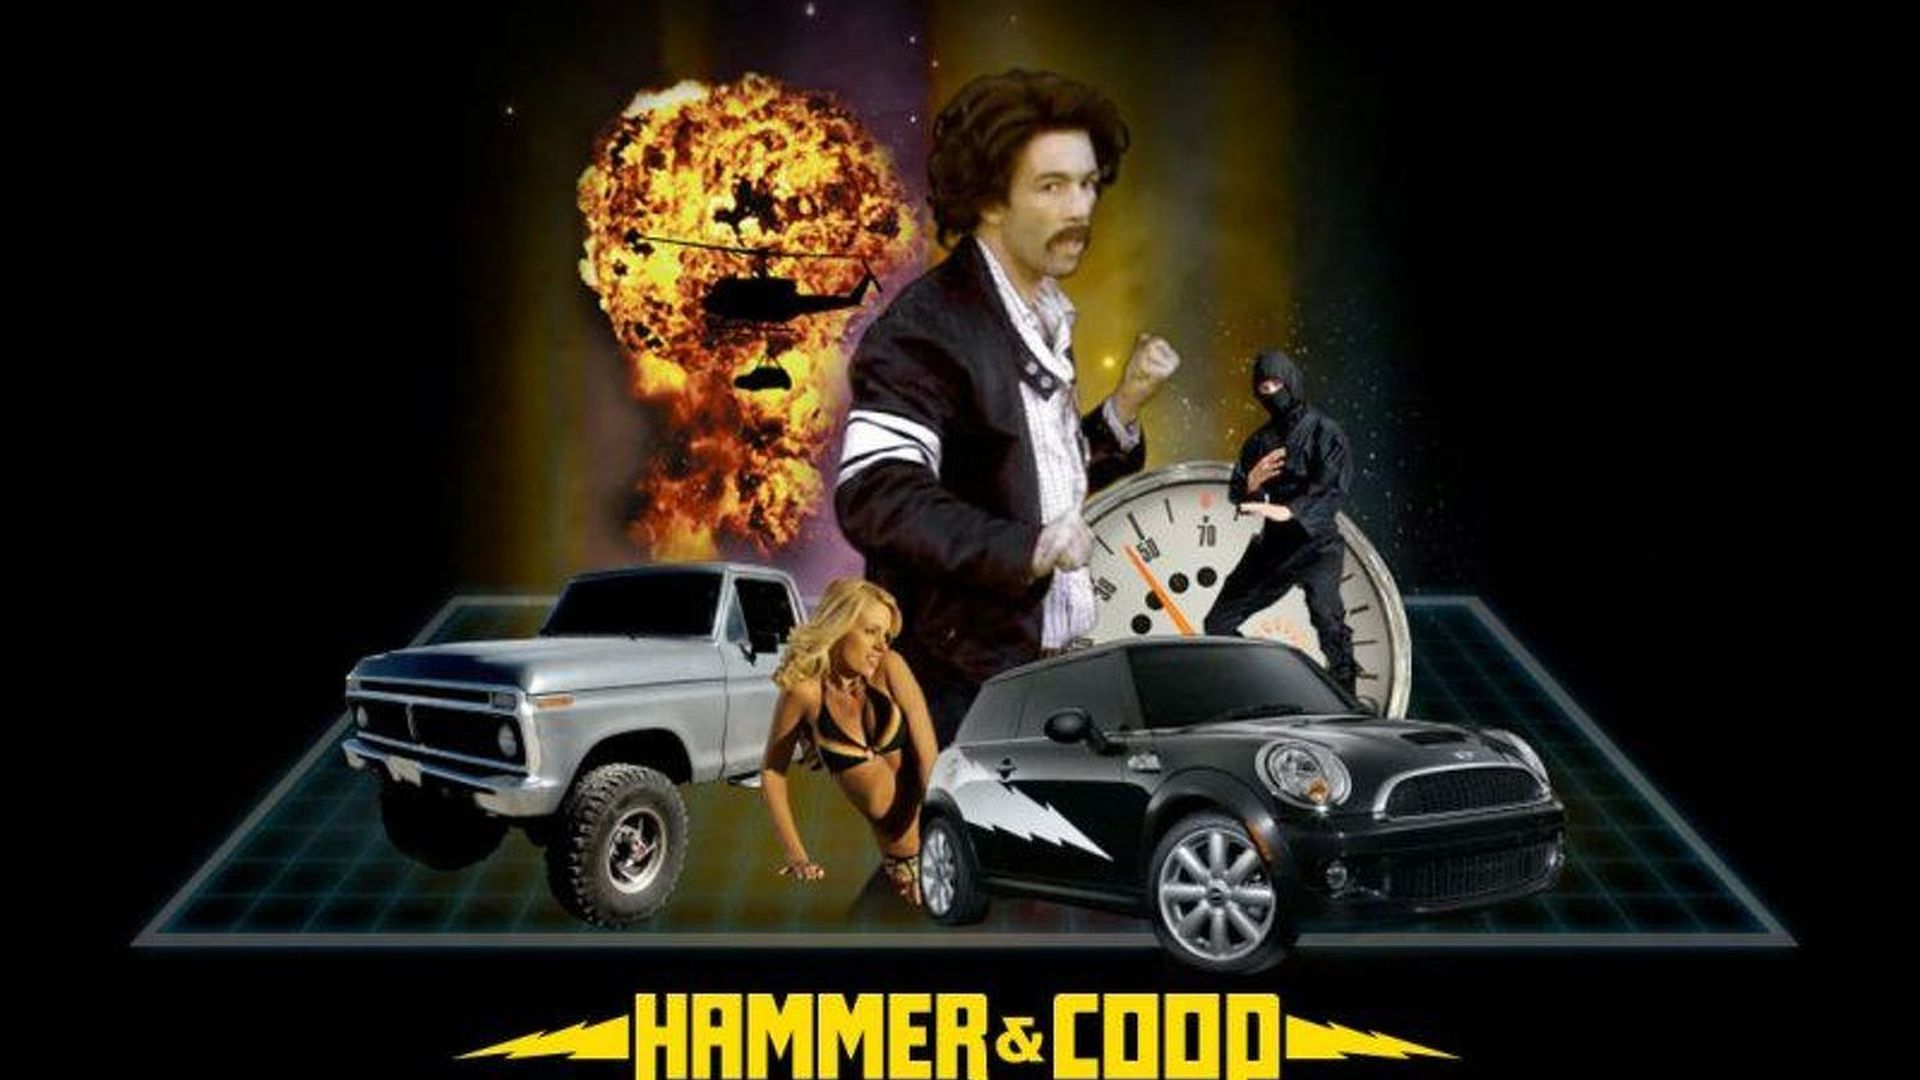 Hammer & Coop